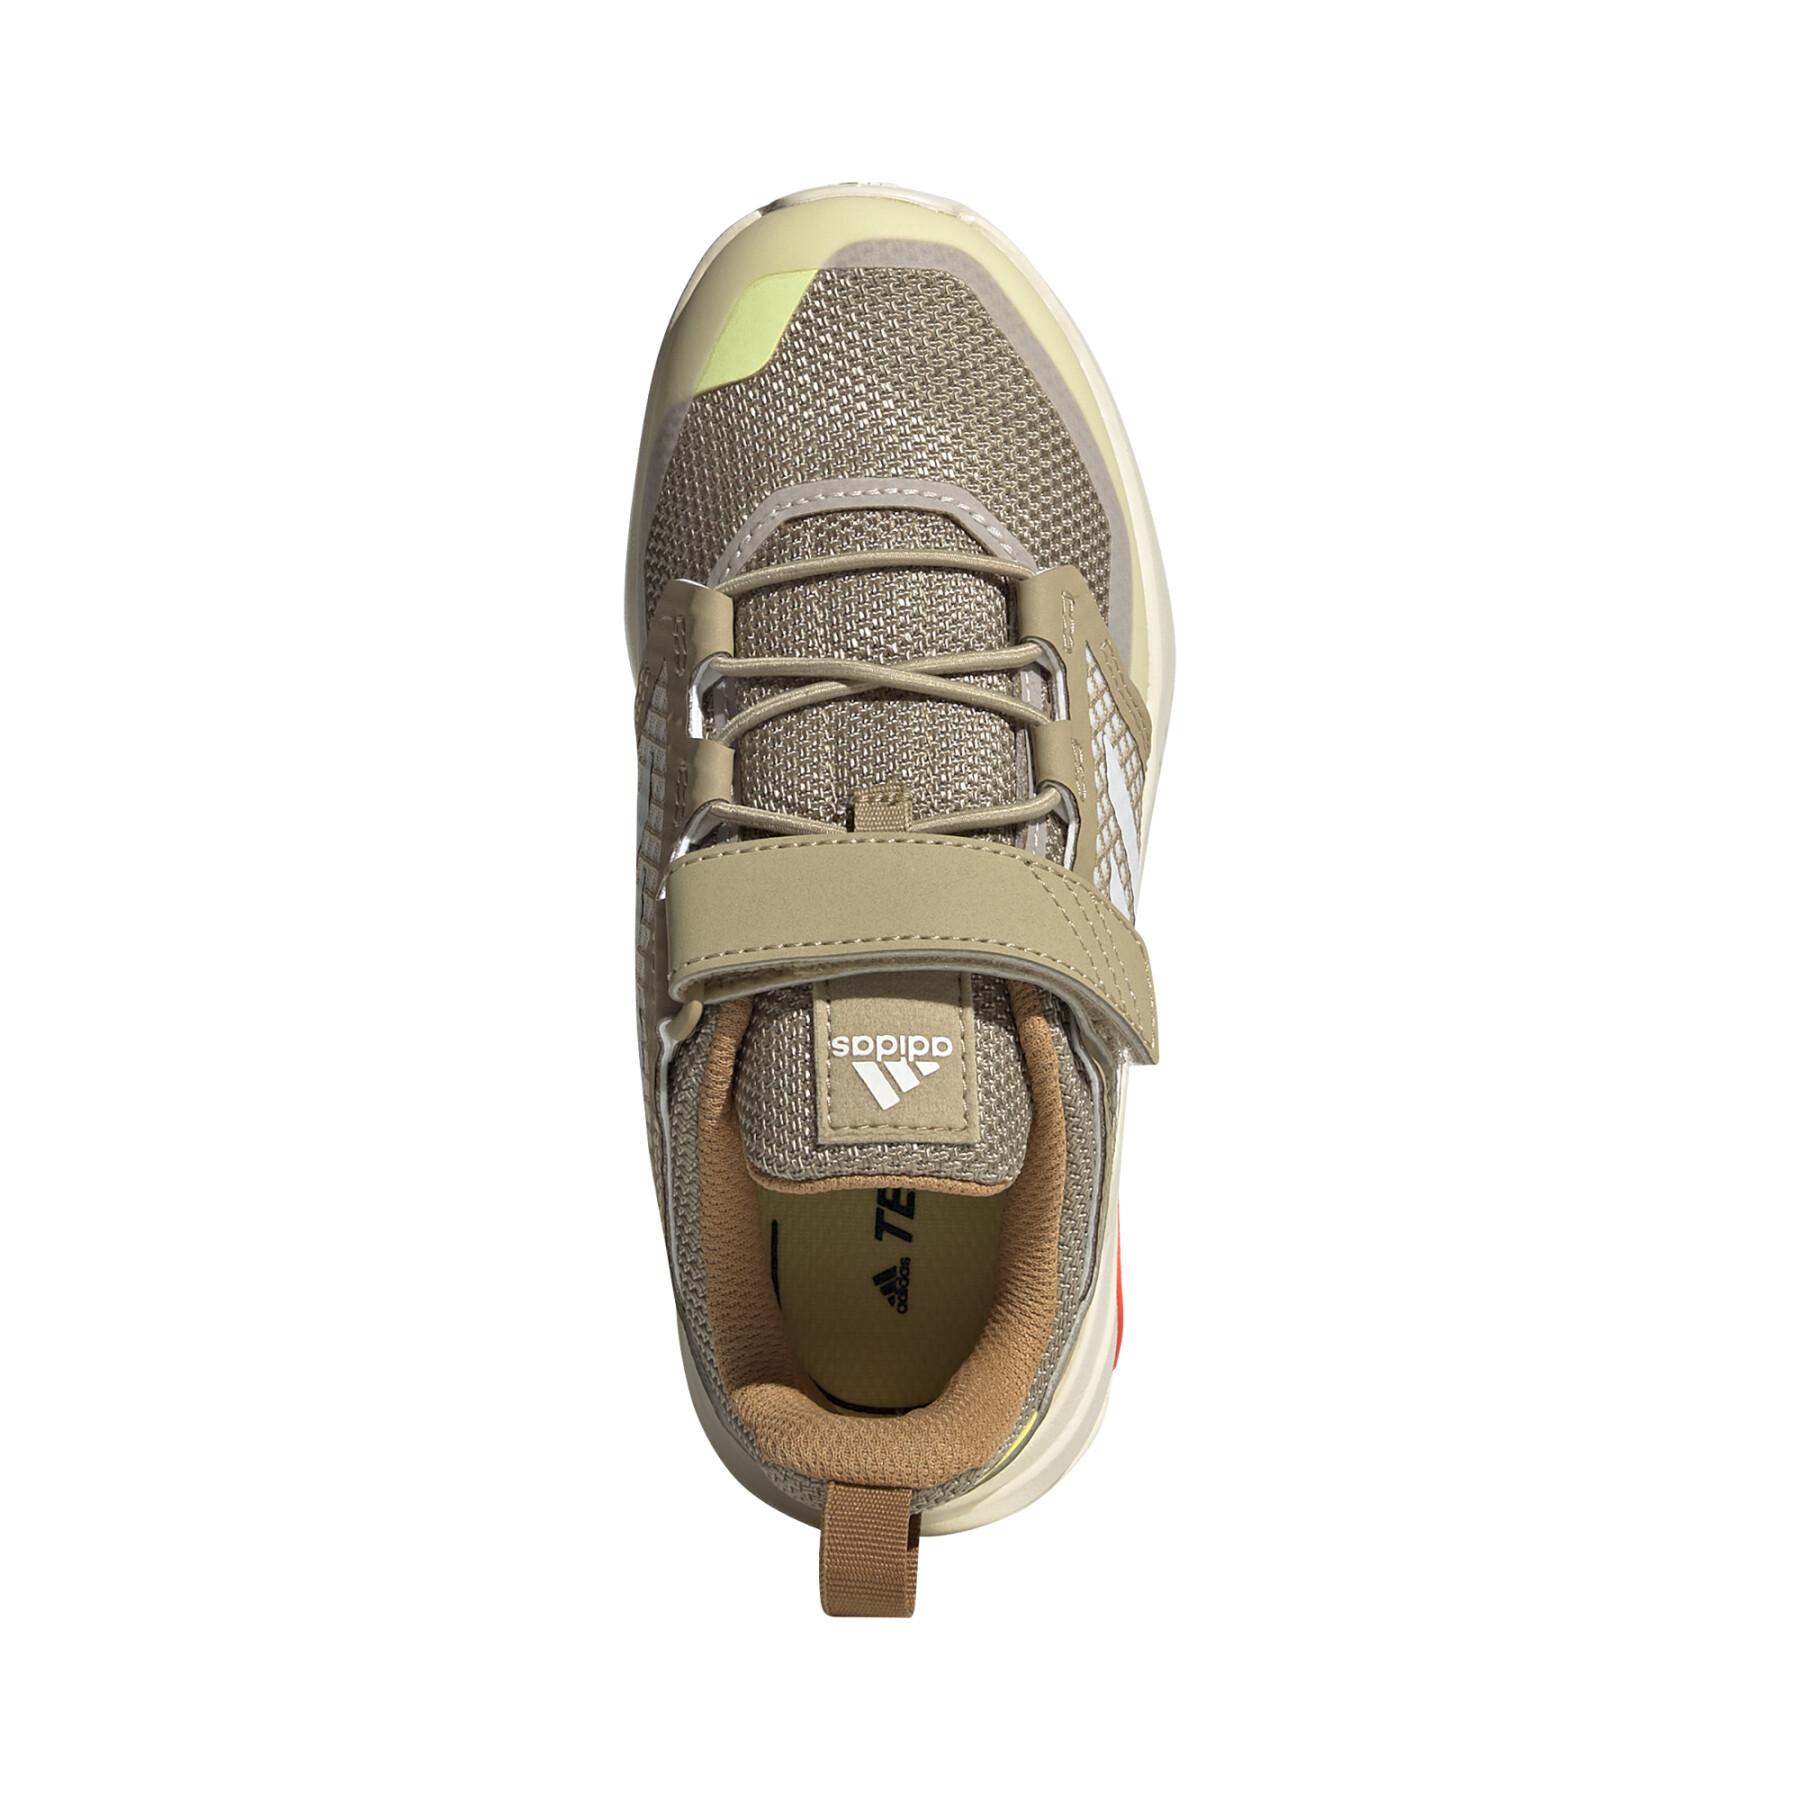 Chaussures de randonnée enfant adidas Terrex Trailmaker